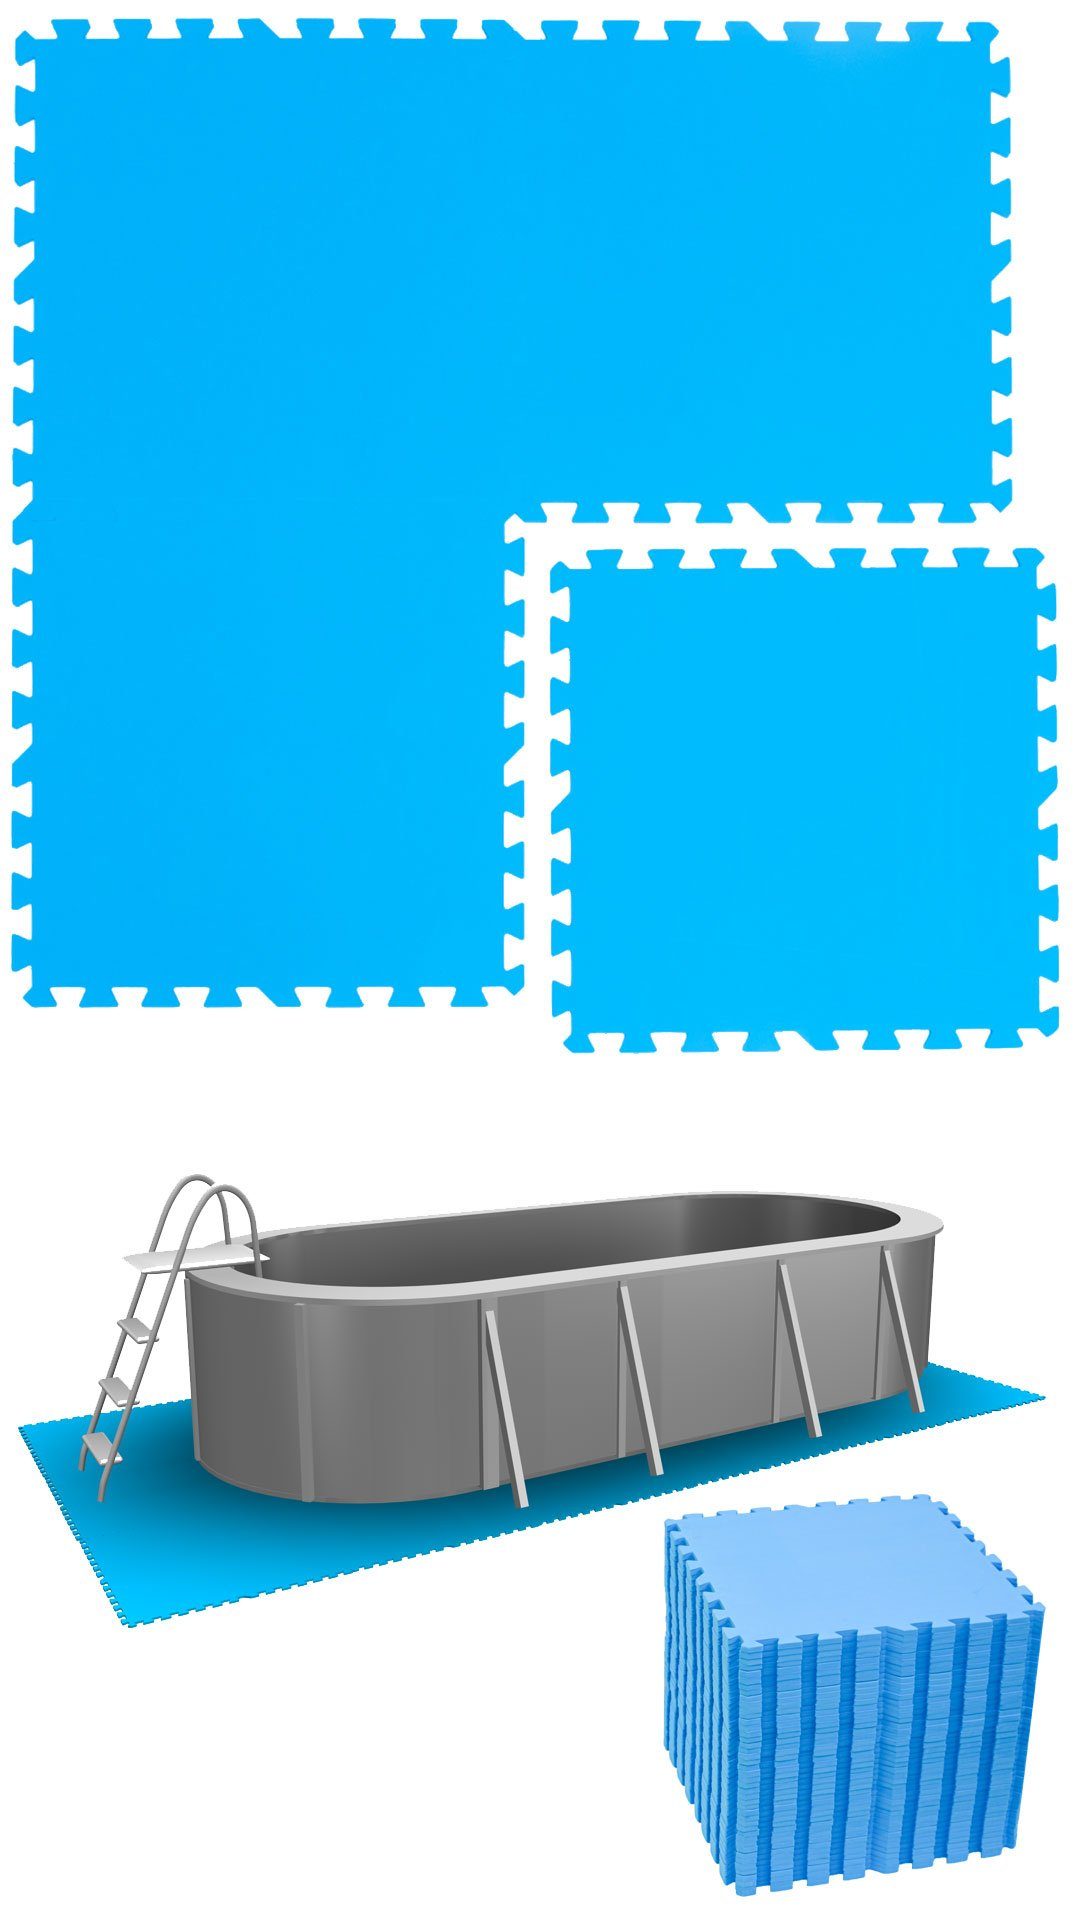 eyepower Bodenmatte 10,3 m² Poolunterlage 44 EVA Matten 50x50 Pool Set, erweiterbares Stecksystem Blau | Bodenmatten